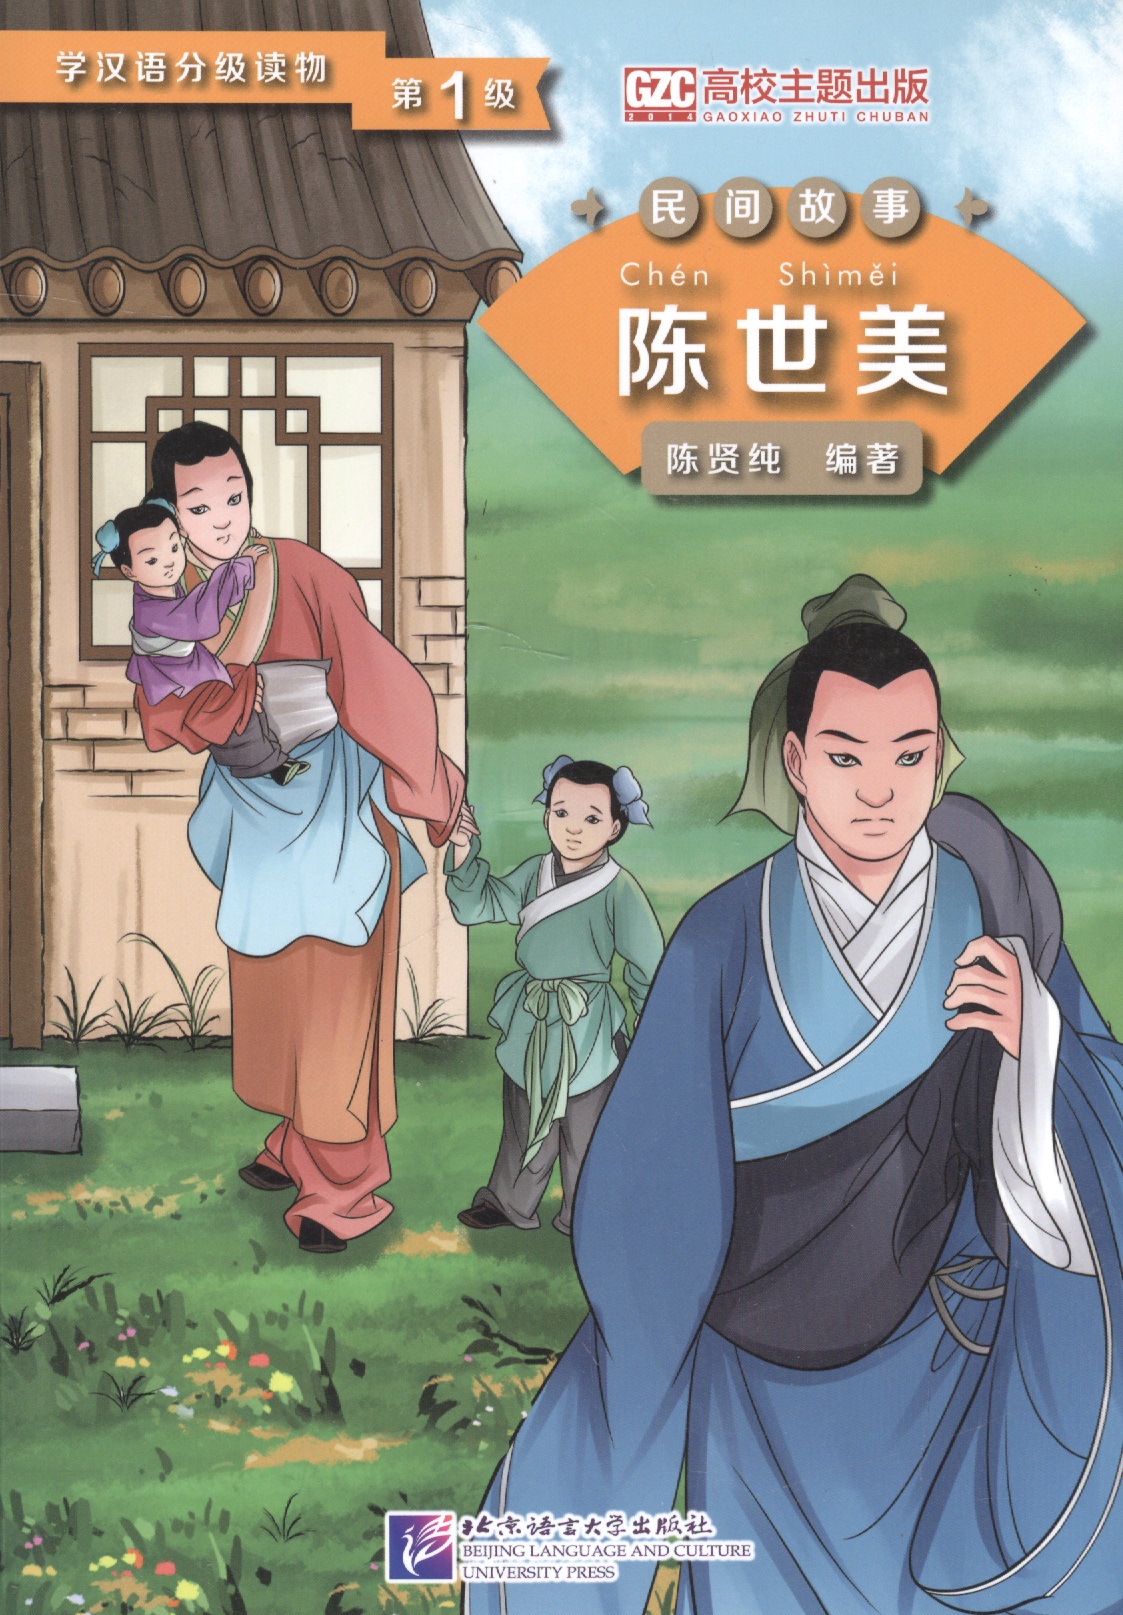 None Graded Readers for Chinese Language Learners (Folktales): Chen Shimei. Адаптированная книга для чтения